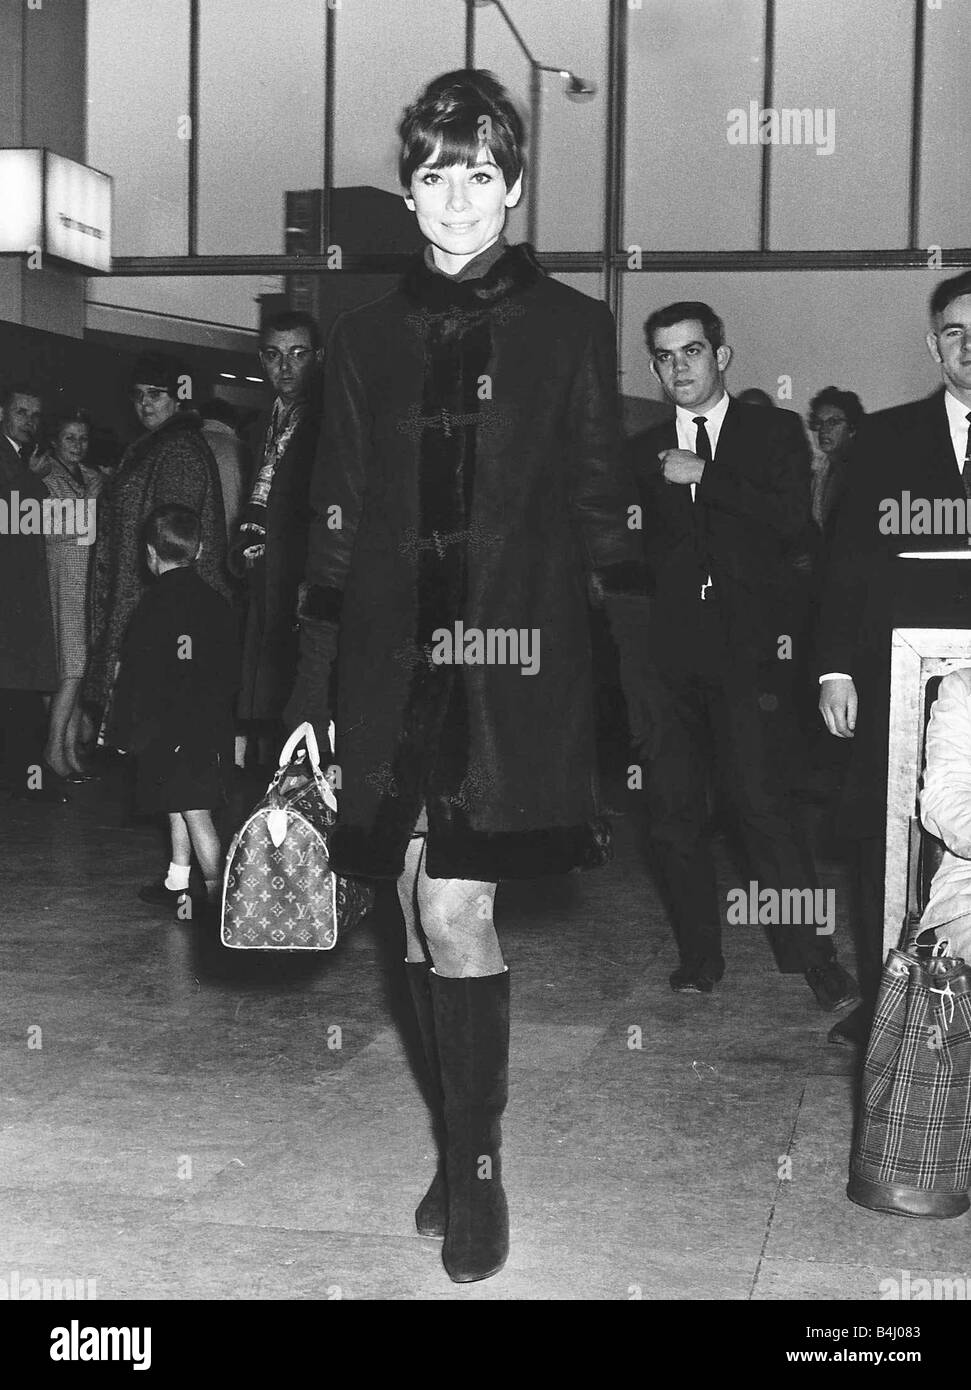 Audrey Hepburn actress at Heathrow airport MSi Stock Photo - Alamy